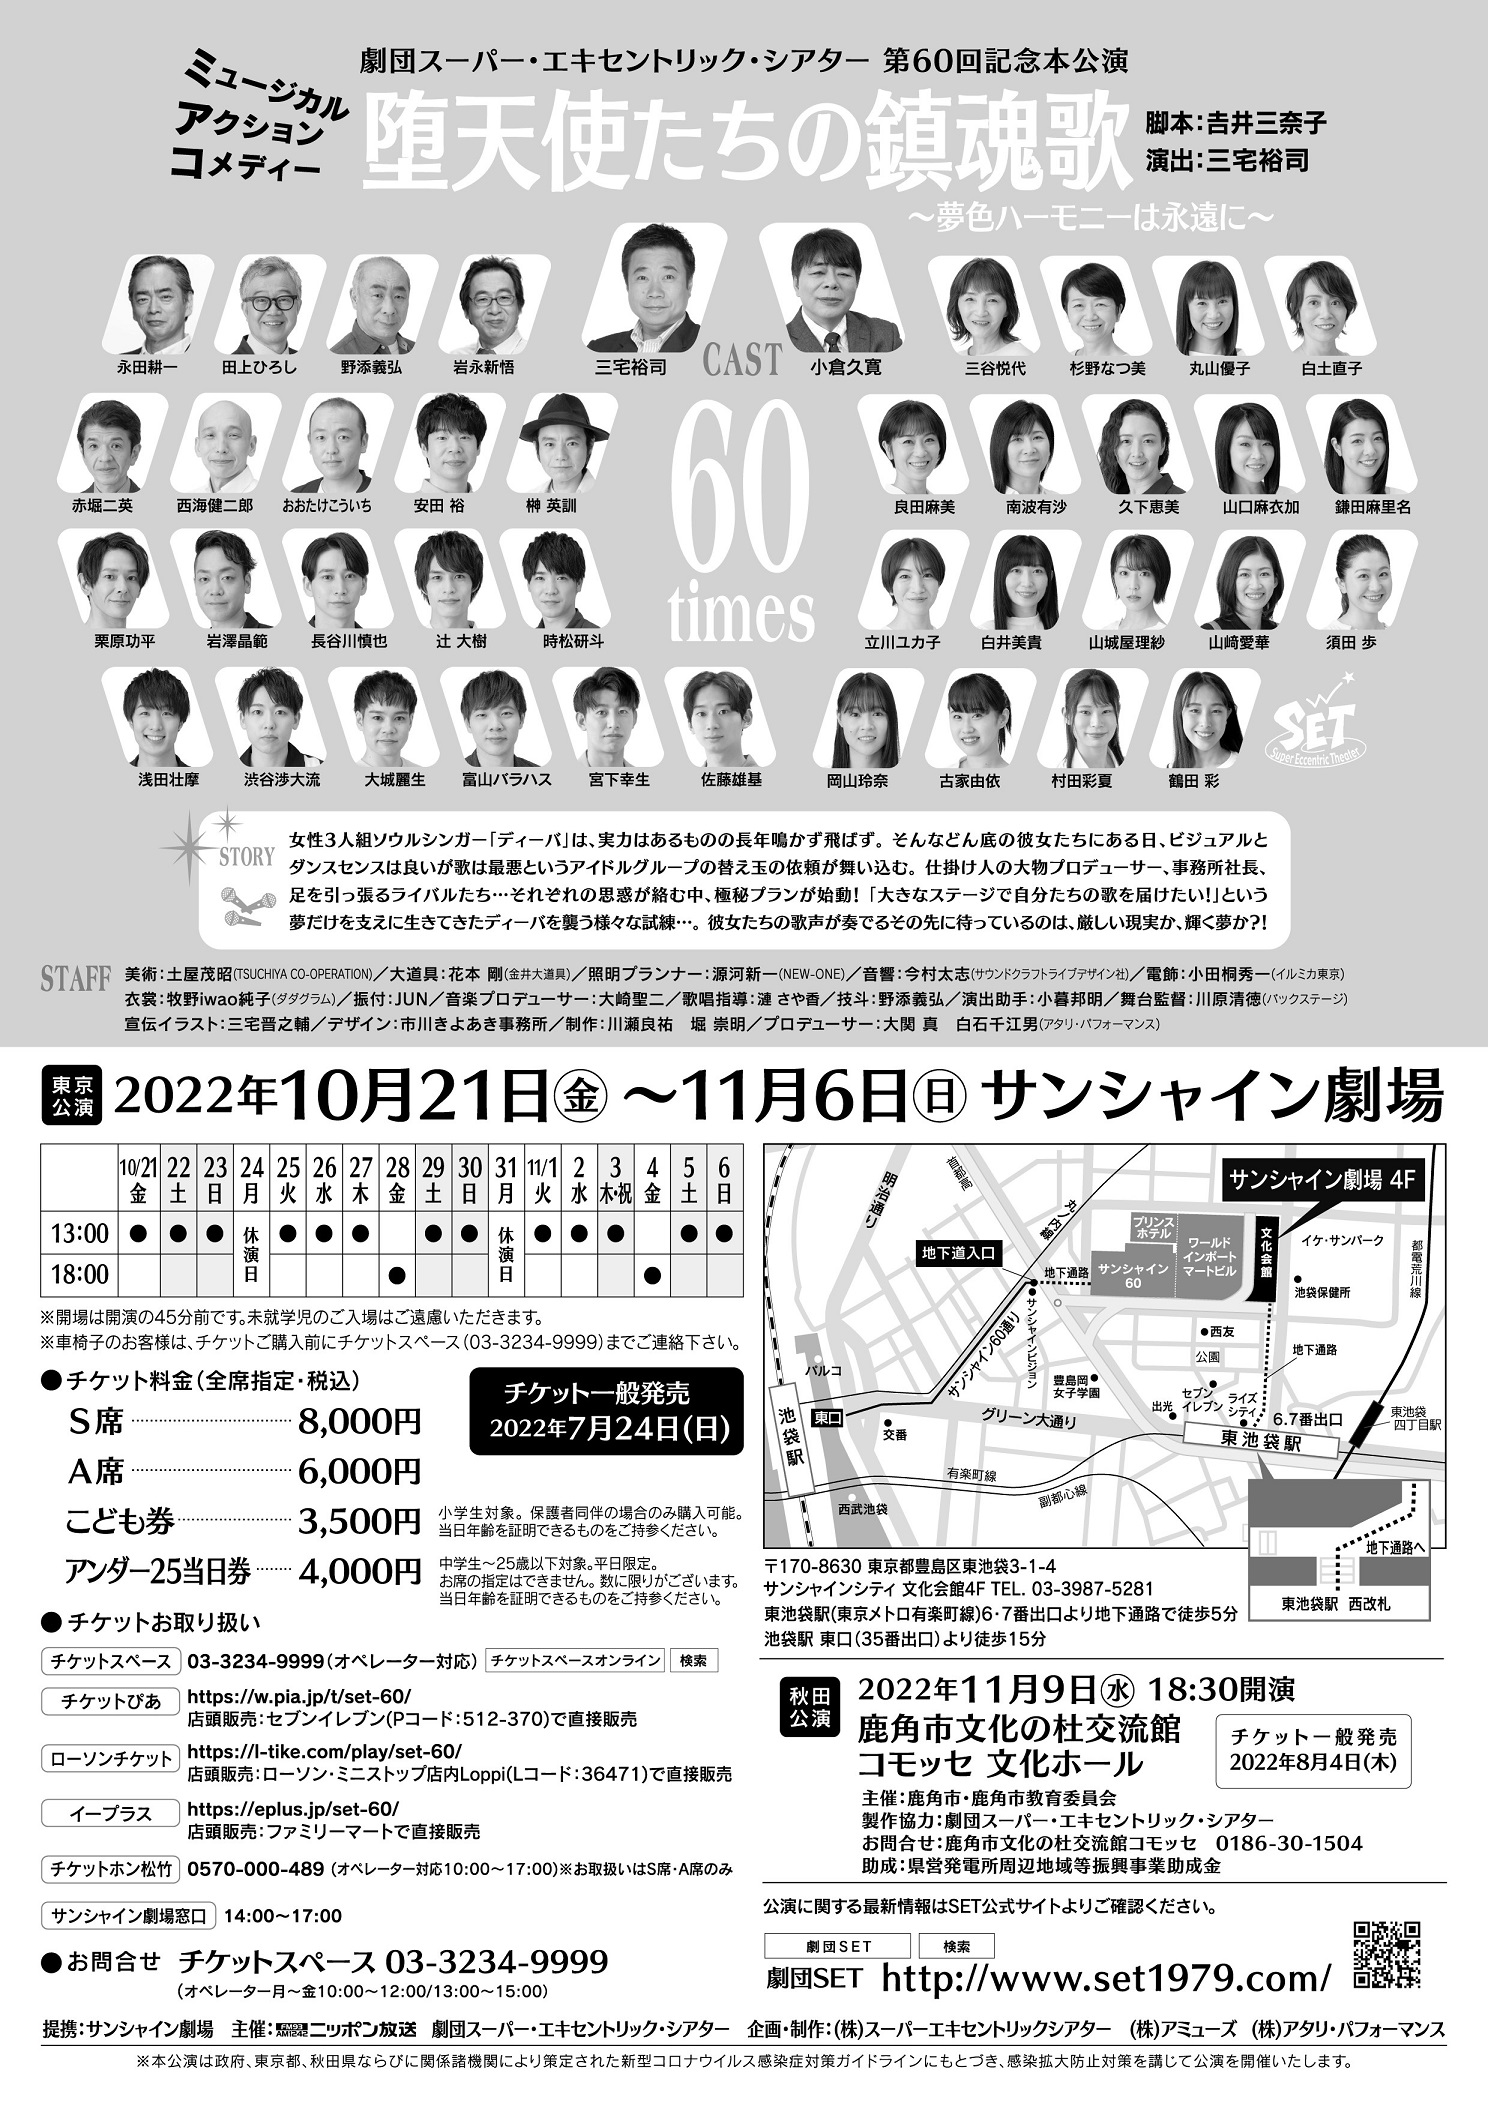 劇団スーパー・エキセントリック・シアター 第60回記念本公演 